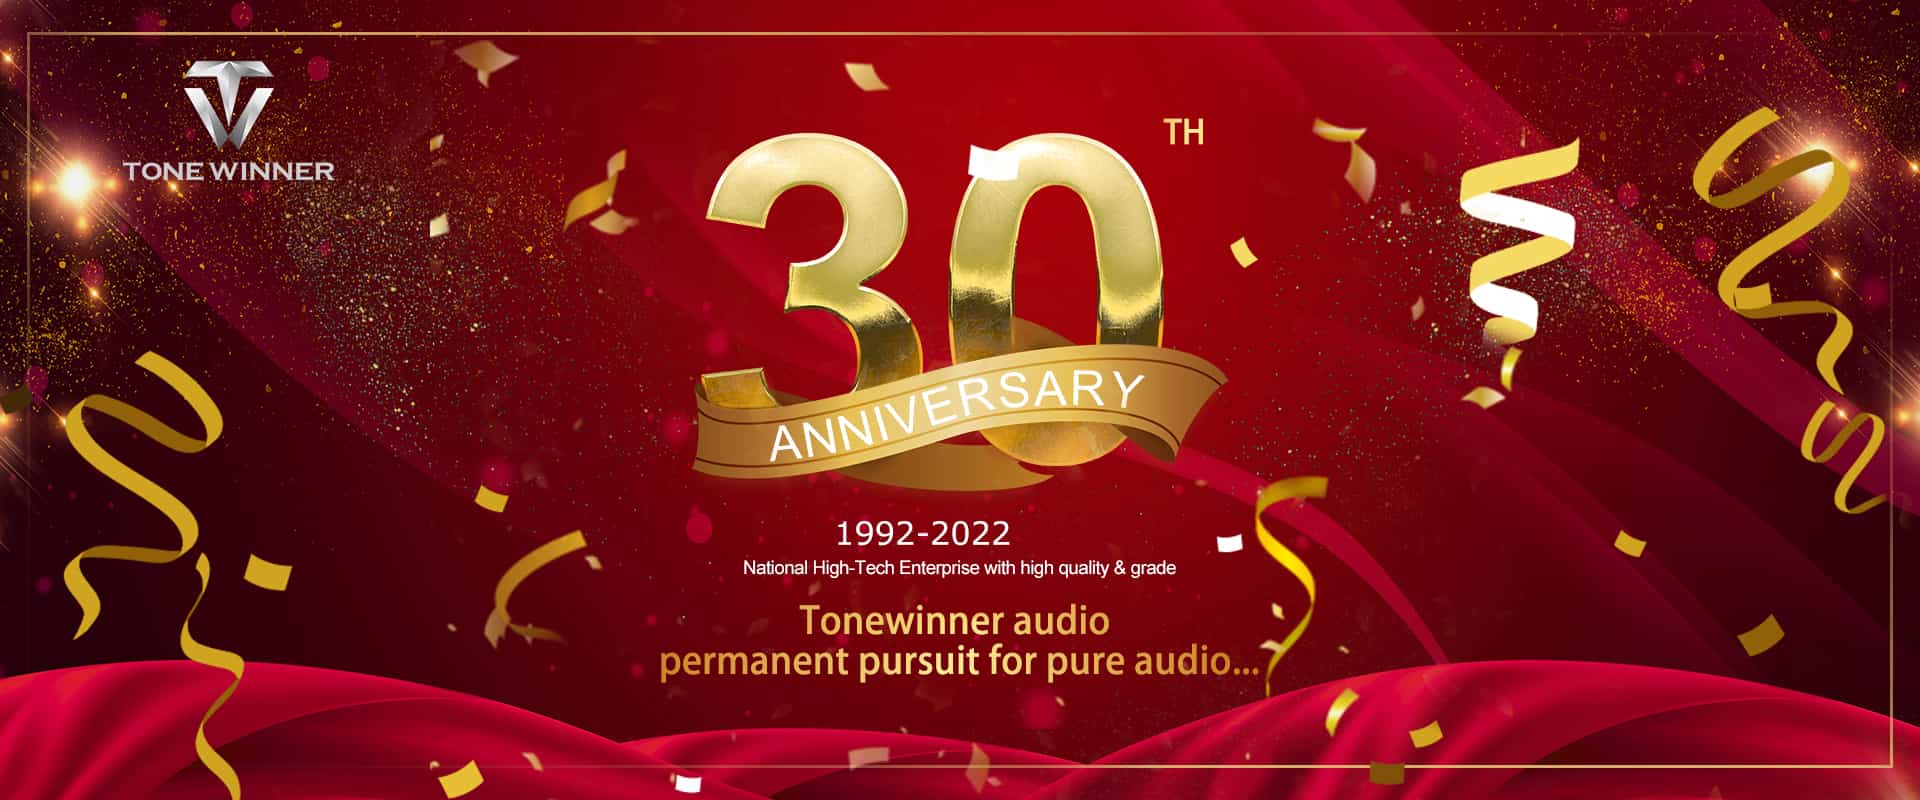 Tonewinner Celebrazione del 30° anniversario, congratulazioni!
